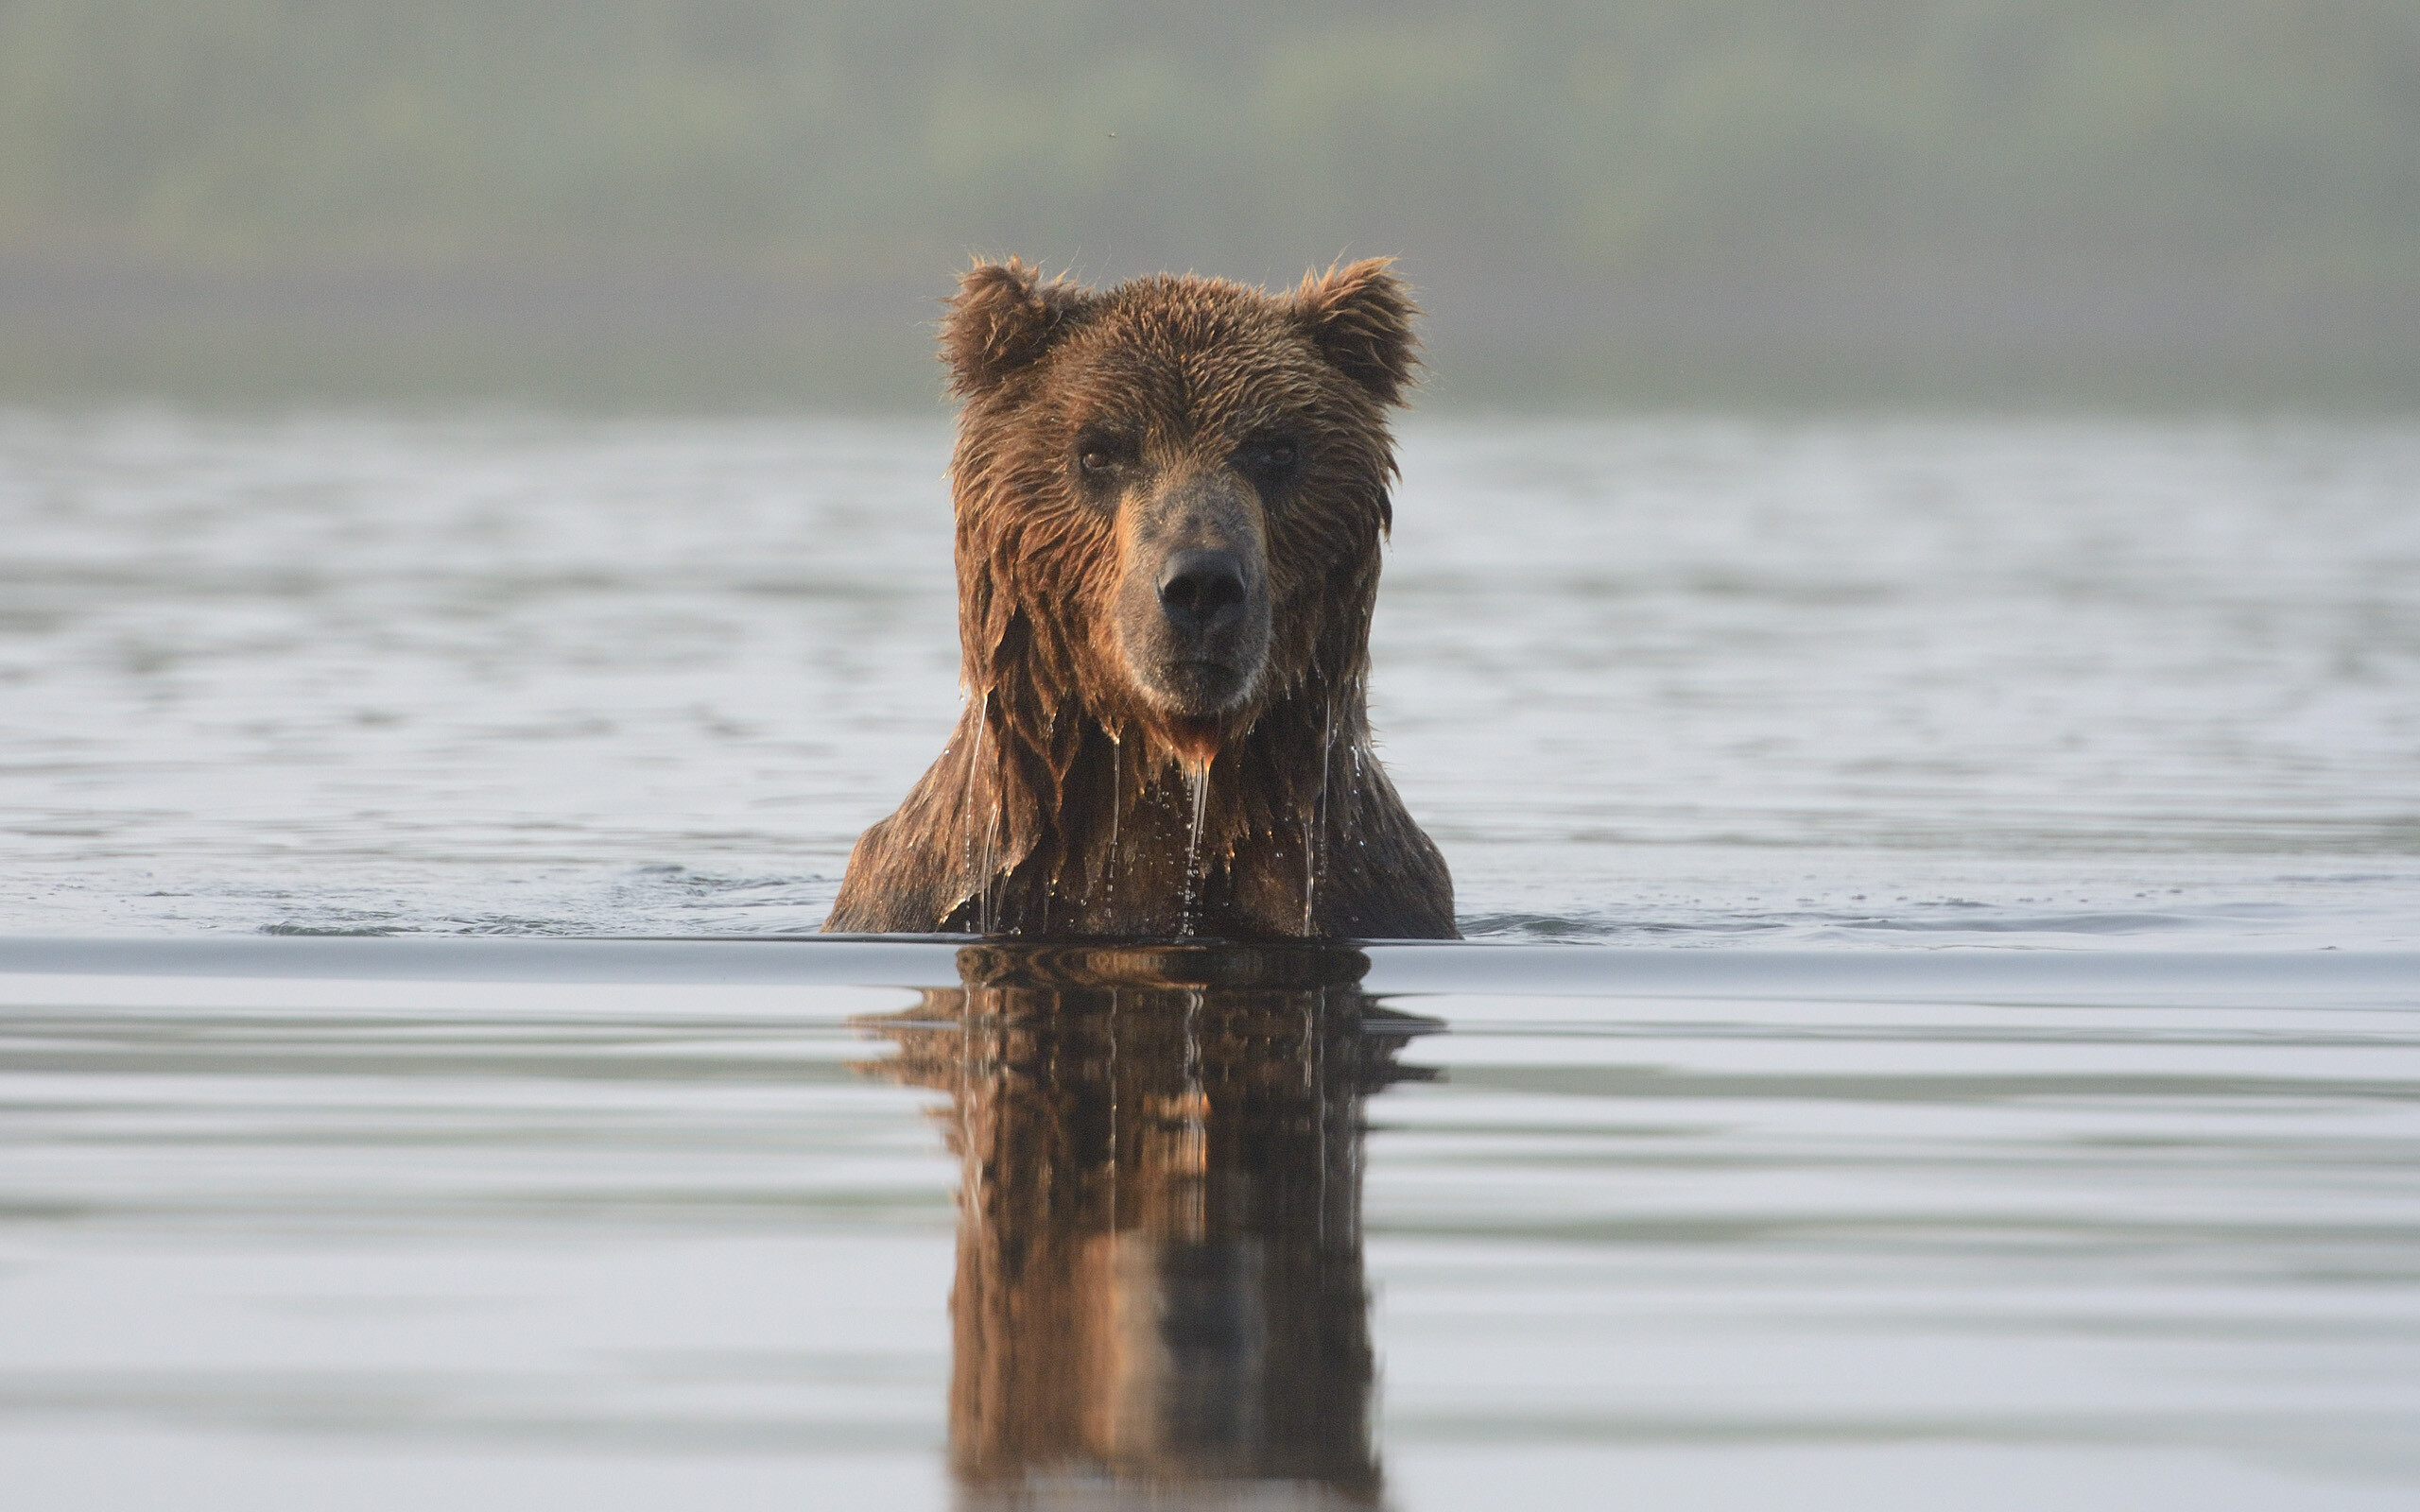 Медведь почти переплыл реку Кроноцкую, когда увидел меня на берегу. Явно не обрадовался. Достал задними лапами дно, посмотрел и уплыл назад. Фотограф Игорь Шпиленок